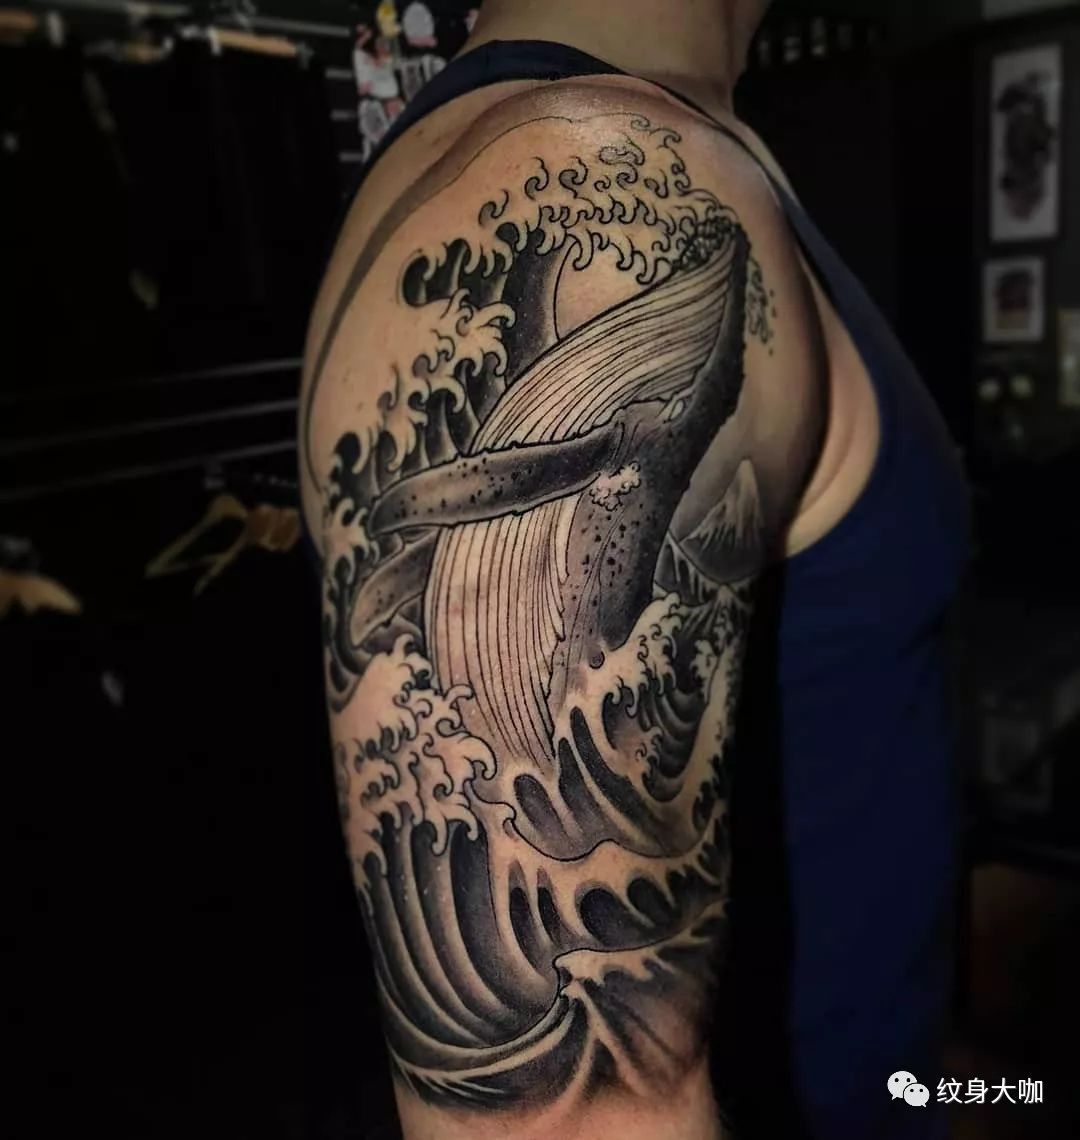 李先生手臂上的海洋文字纹身图案 - 广州纹彩刺青